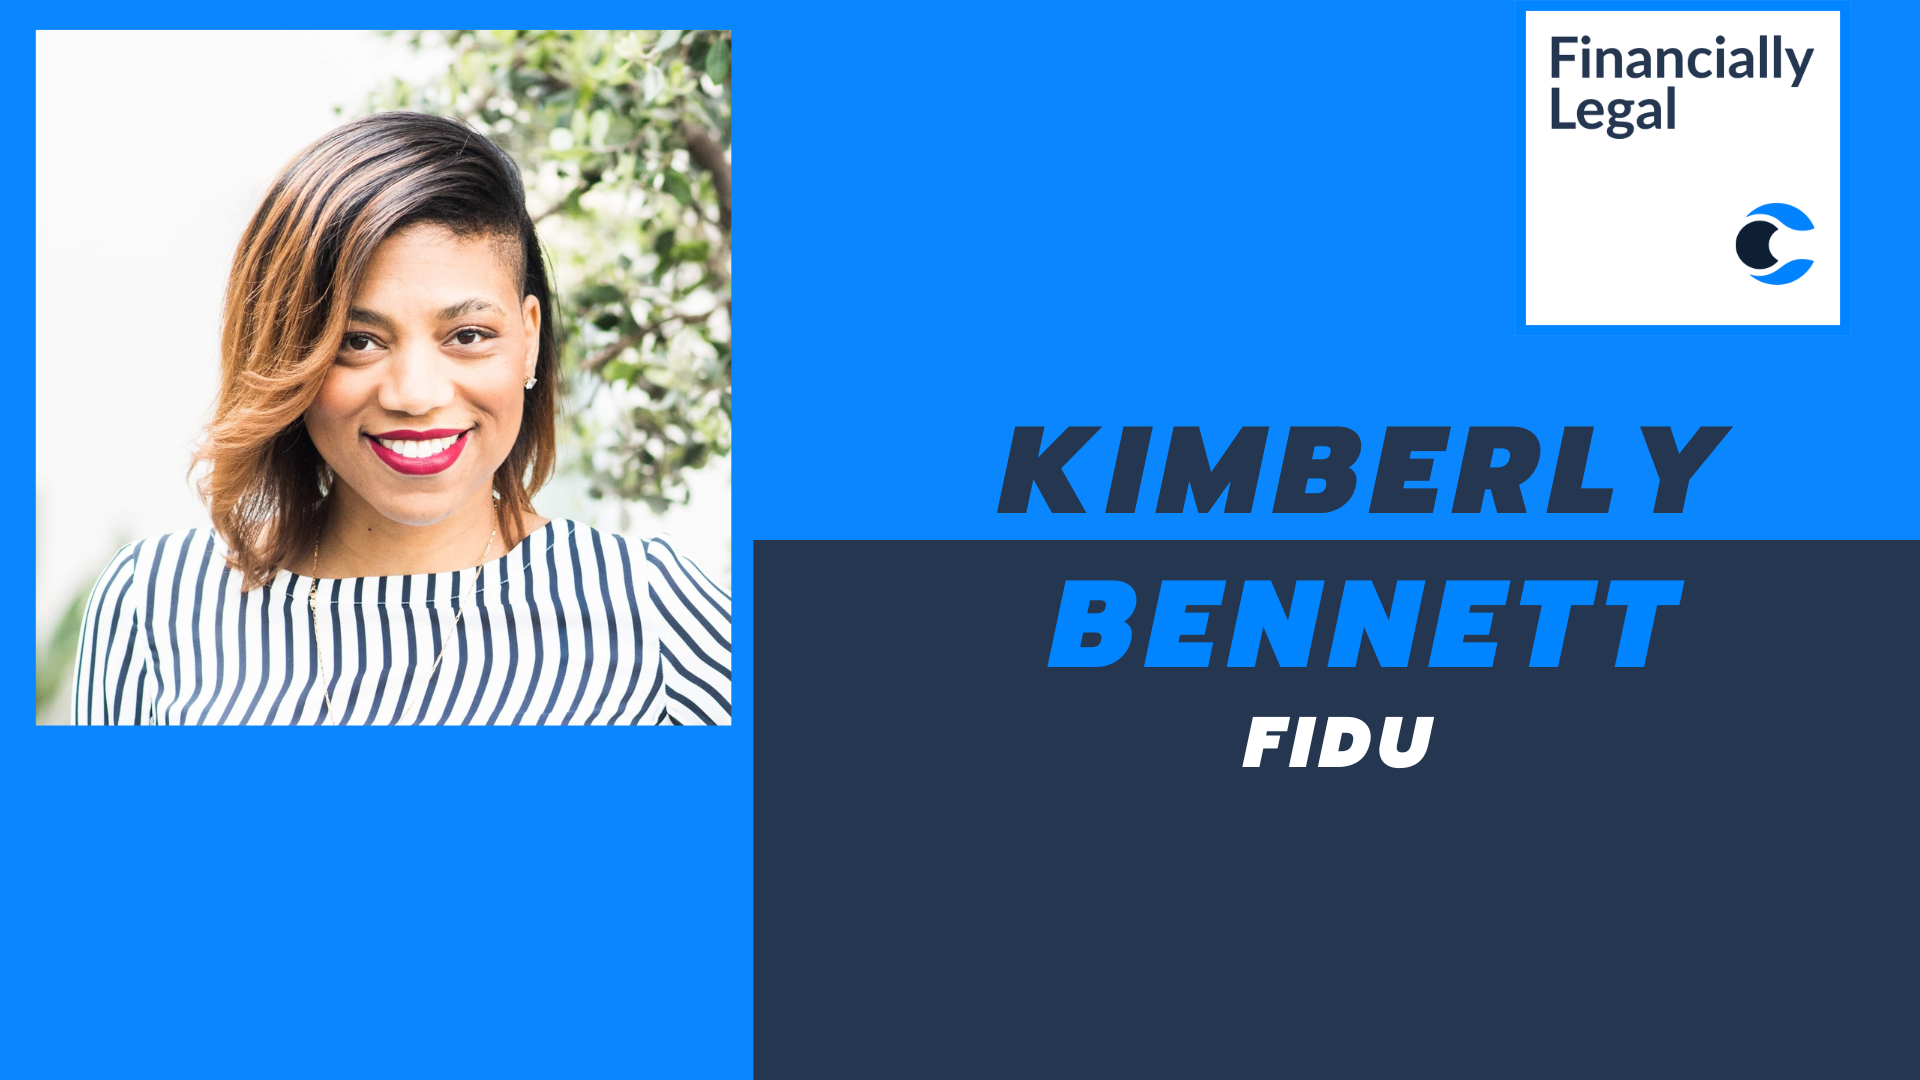 Kimberly Bennett Fidu